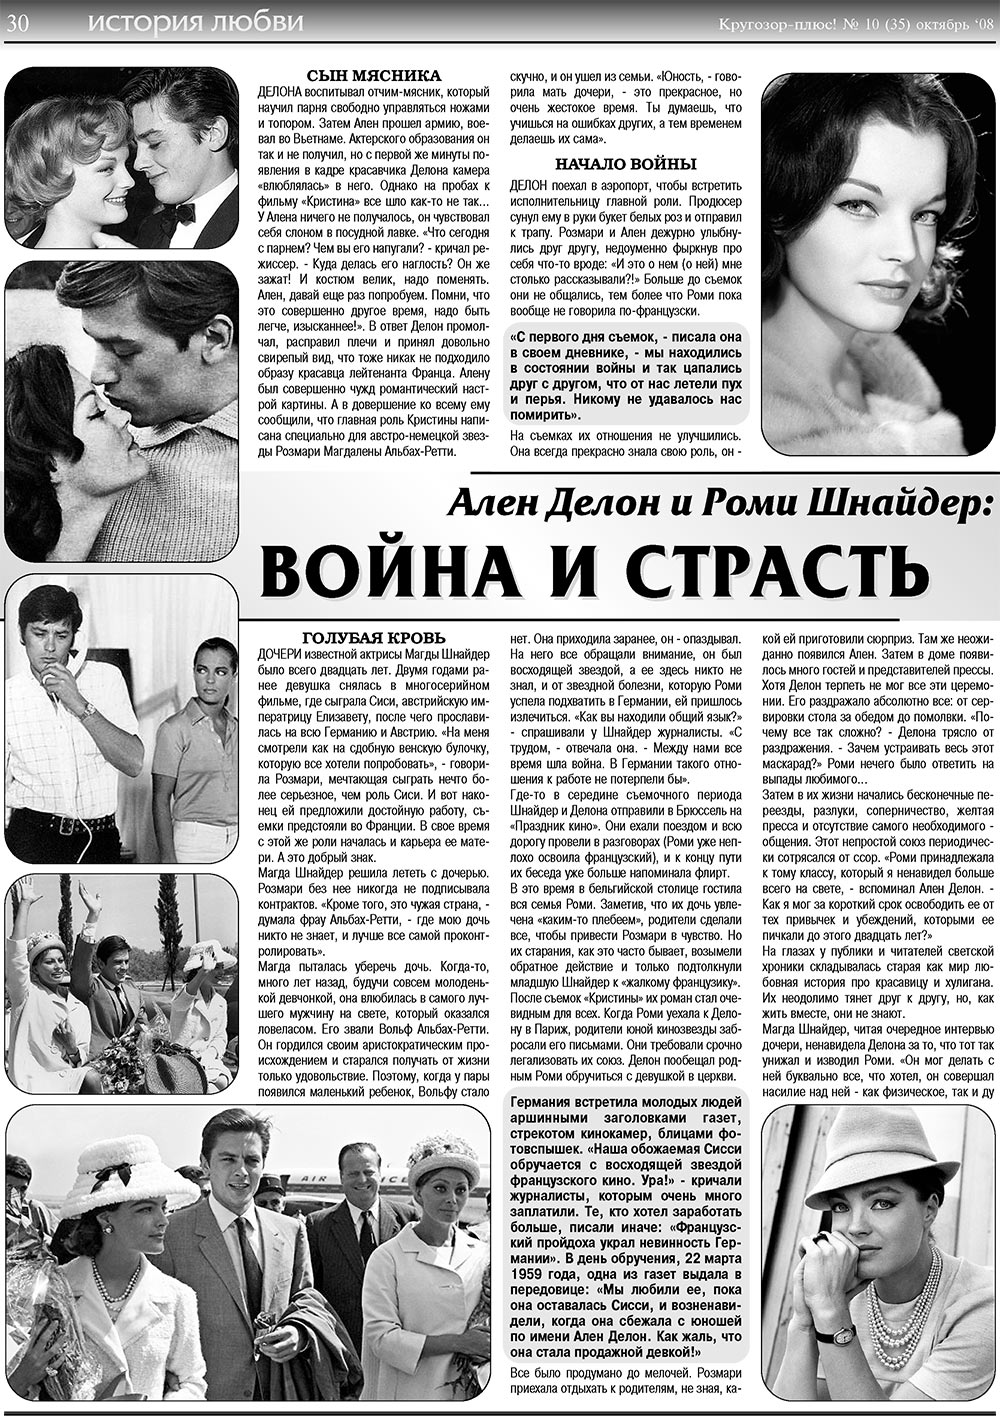 Кругозор плюс!, газета. 2008 №10 стр.30